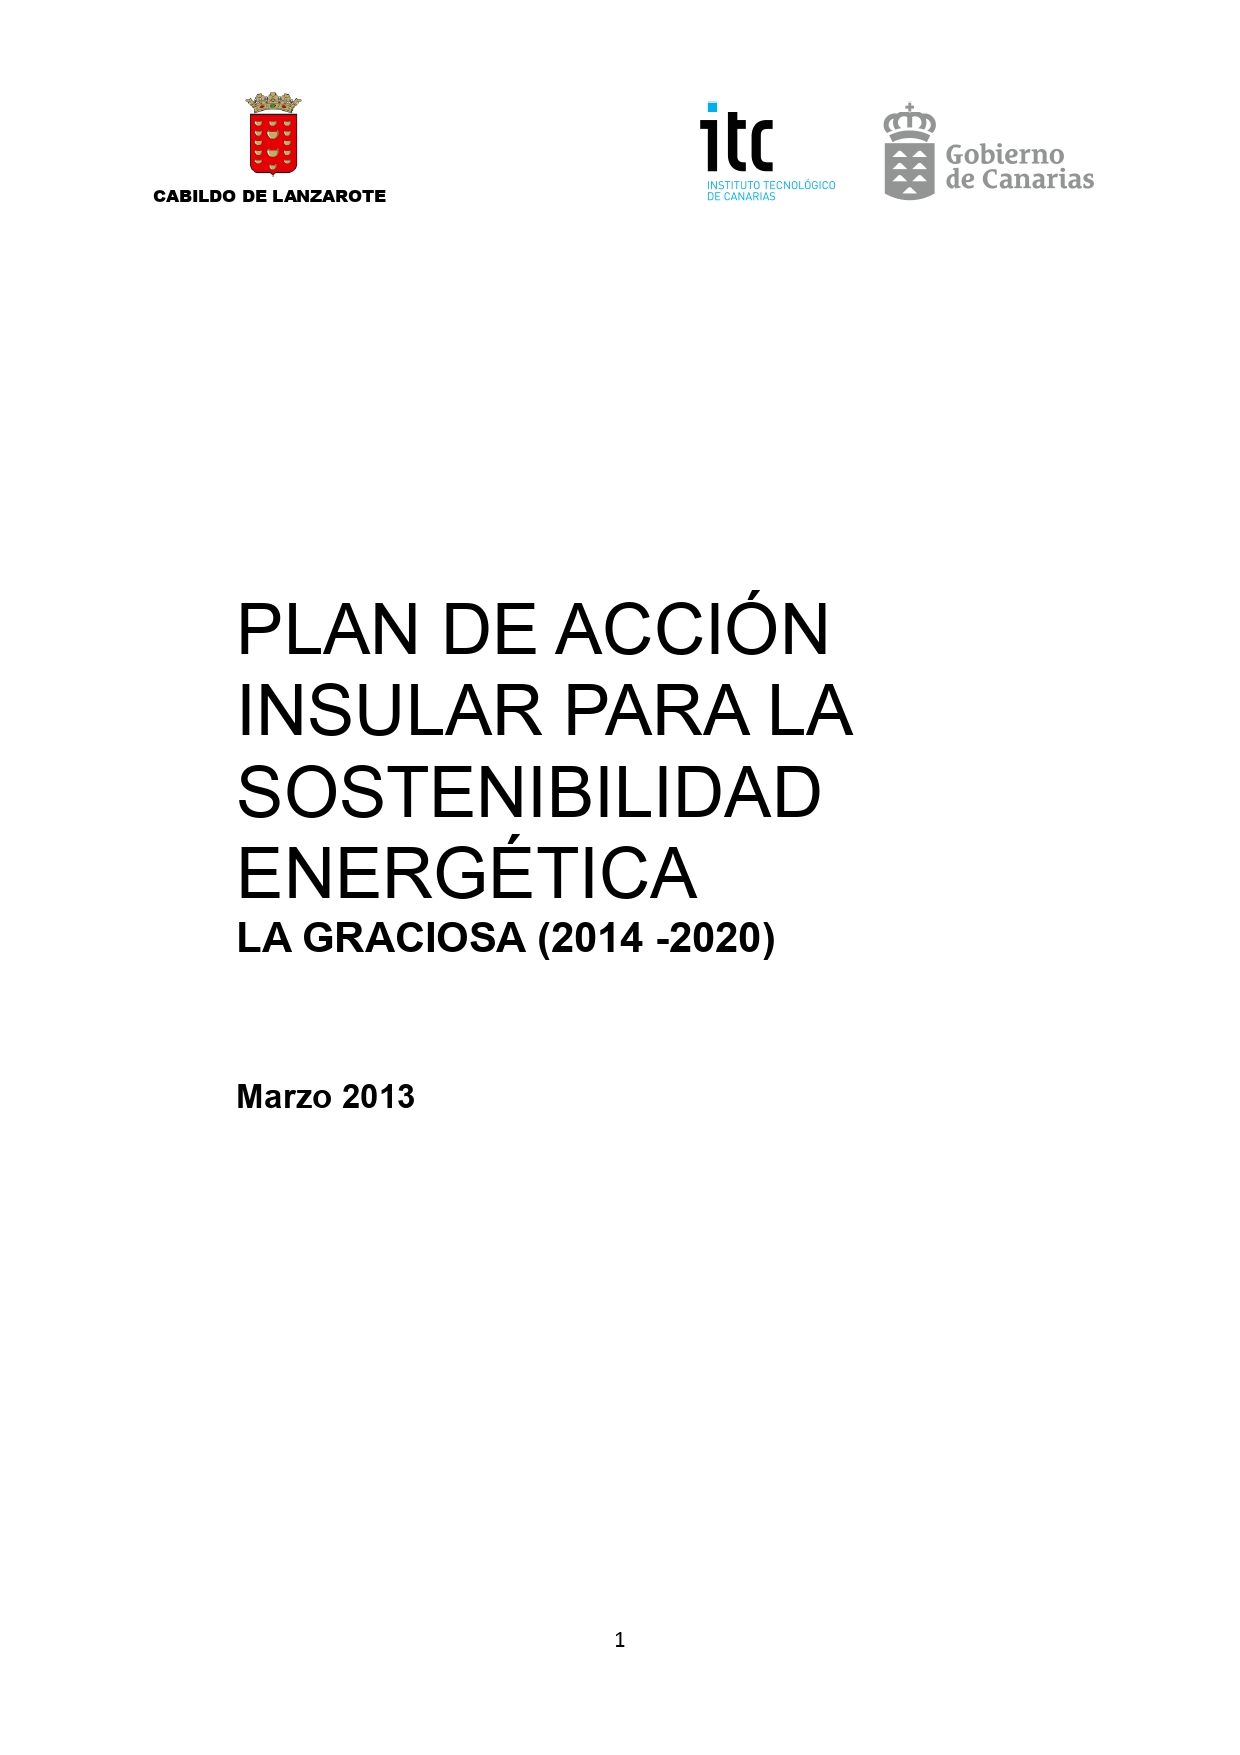 Plan de Acción Insular para la Sostenibilidad Energética para La Graciosa (2012-20)